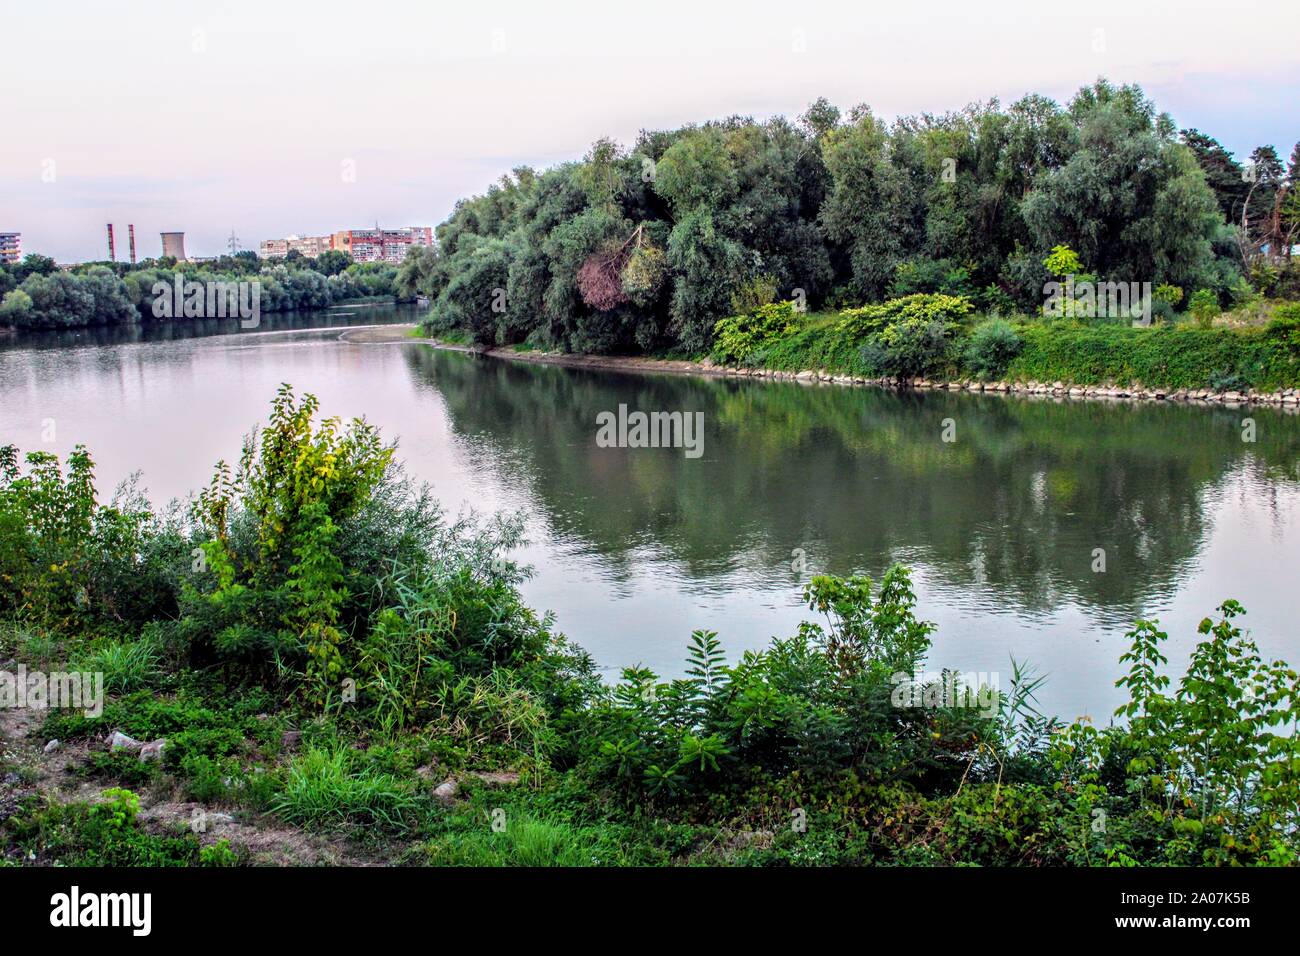 Imagen del río con sauces en ambas orillas de la ciudad de Arad, Rumania Foto de stock